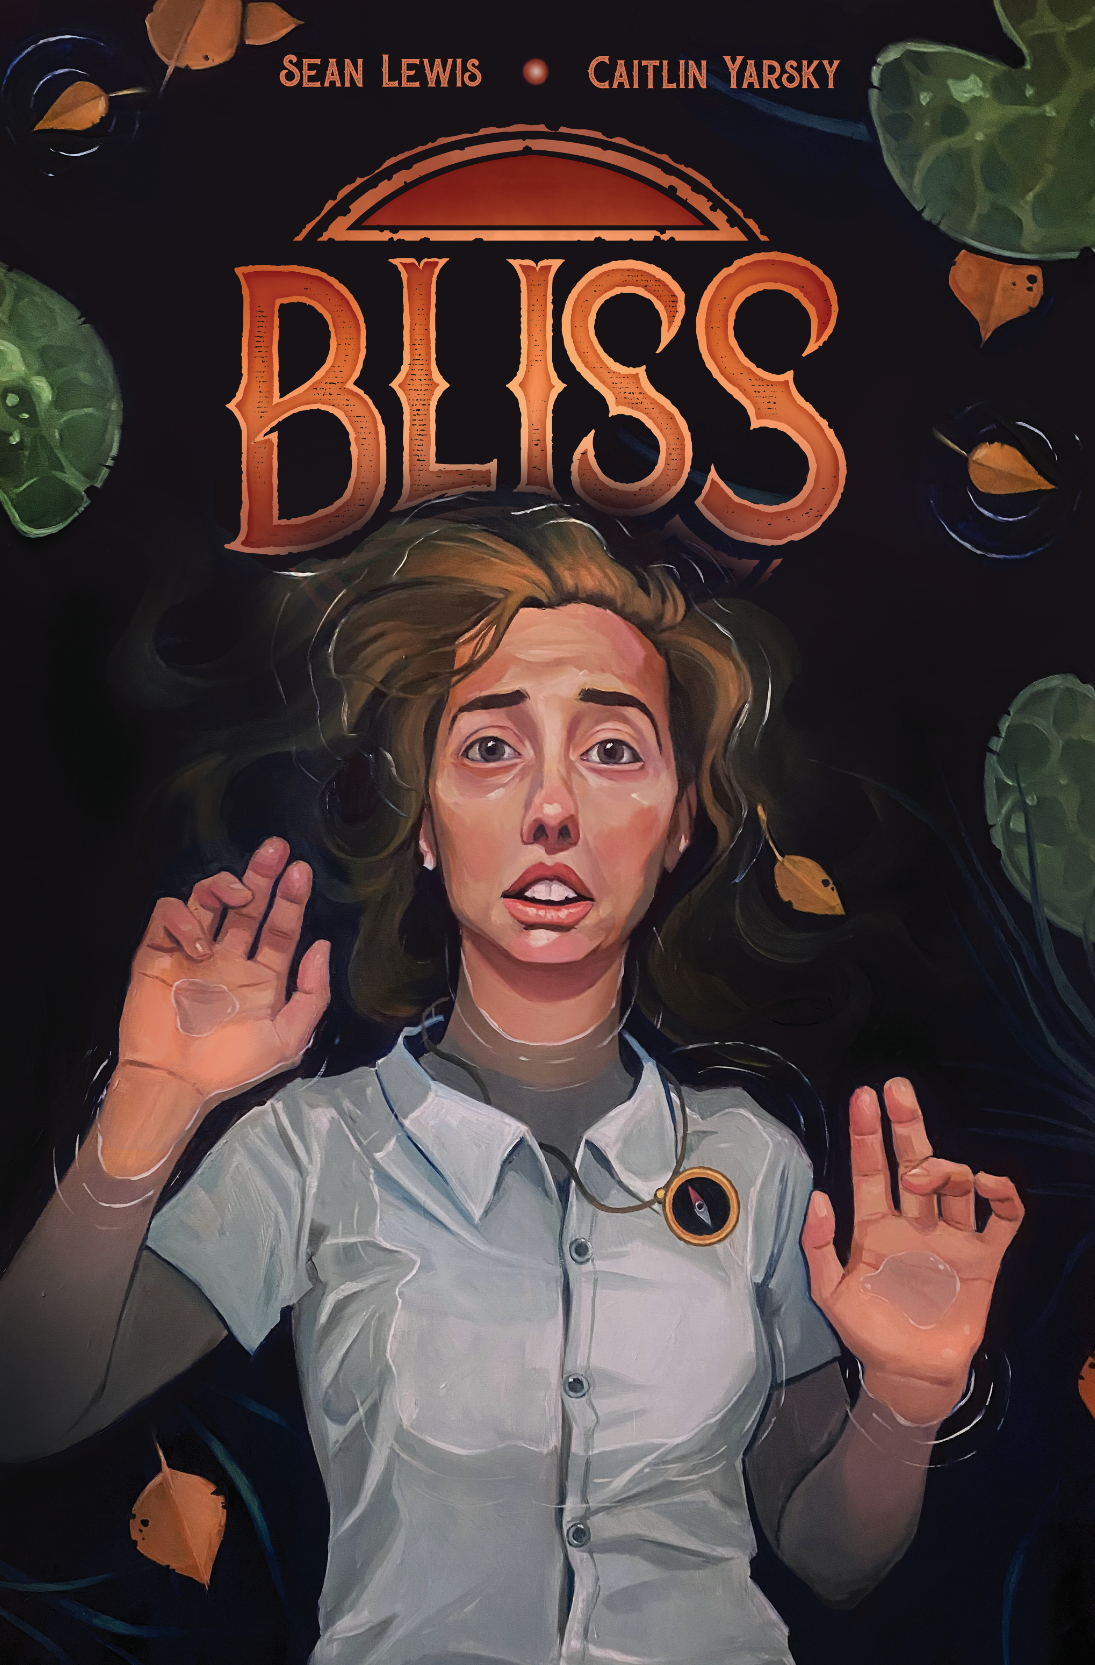 Bliss #1, Image Comics